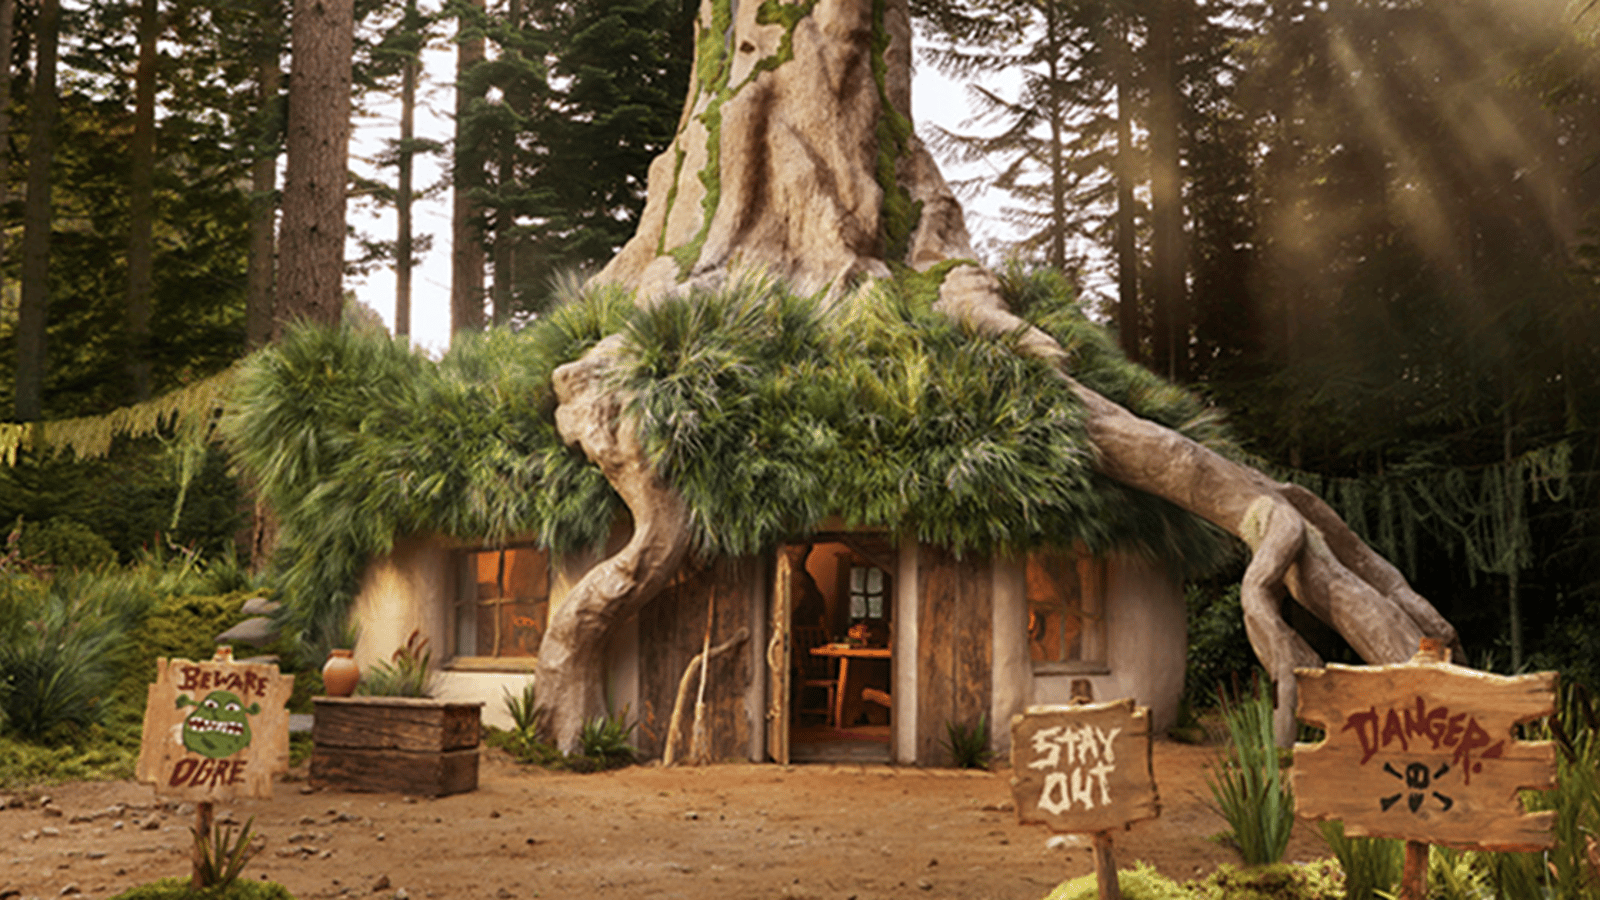 Cette maisonnette inspirée de Shrek vient d'ouvrir ses portes et vous pouvez y séjourner gratuitement.